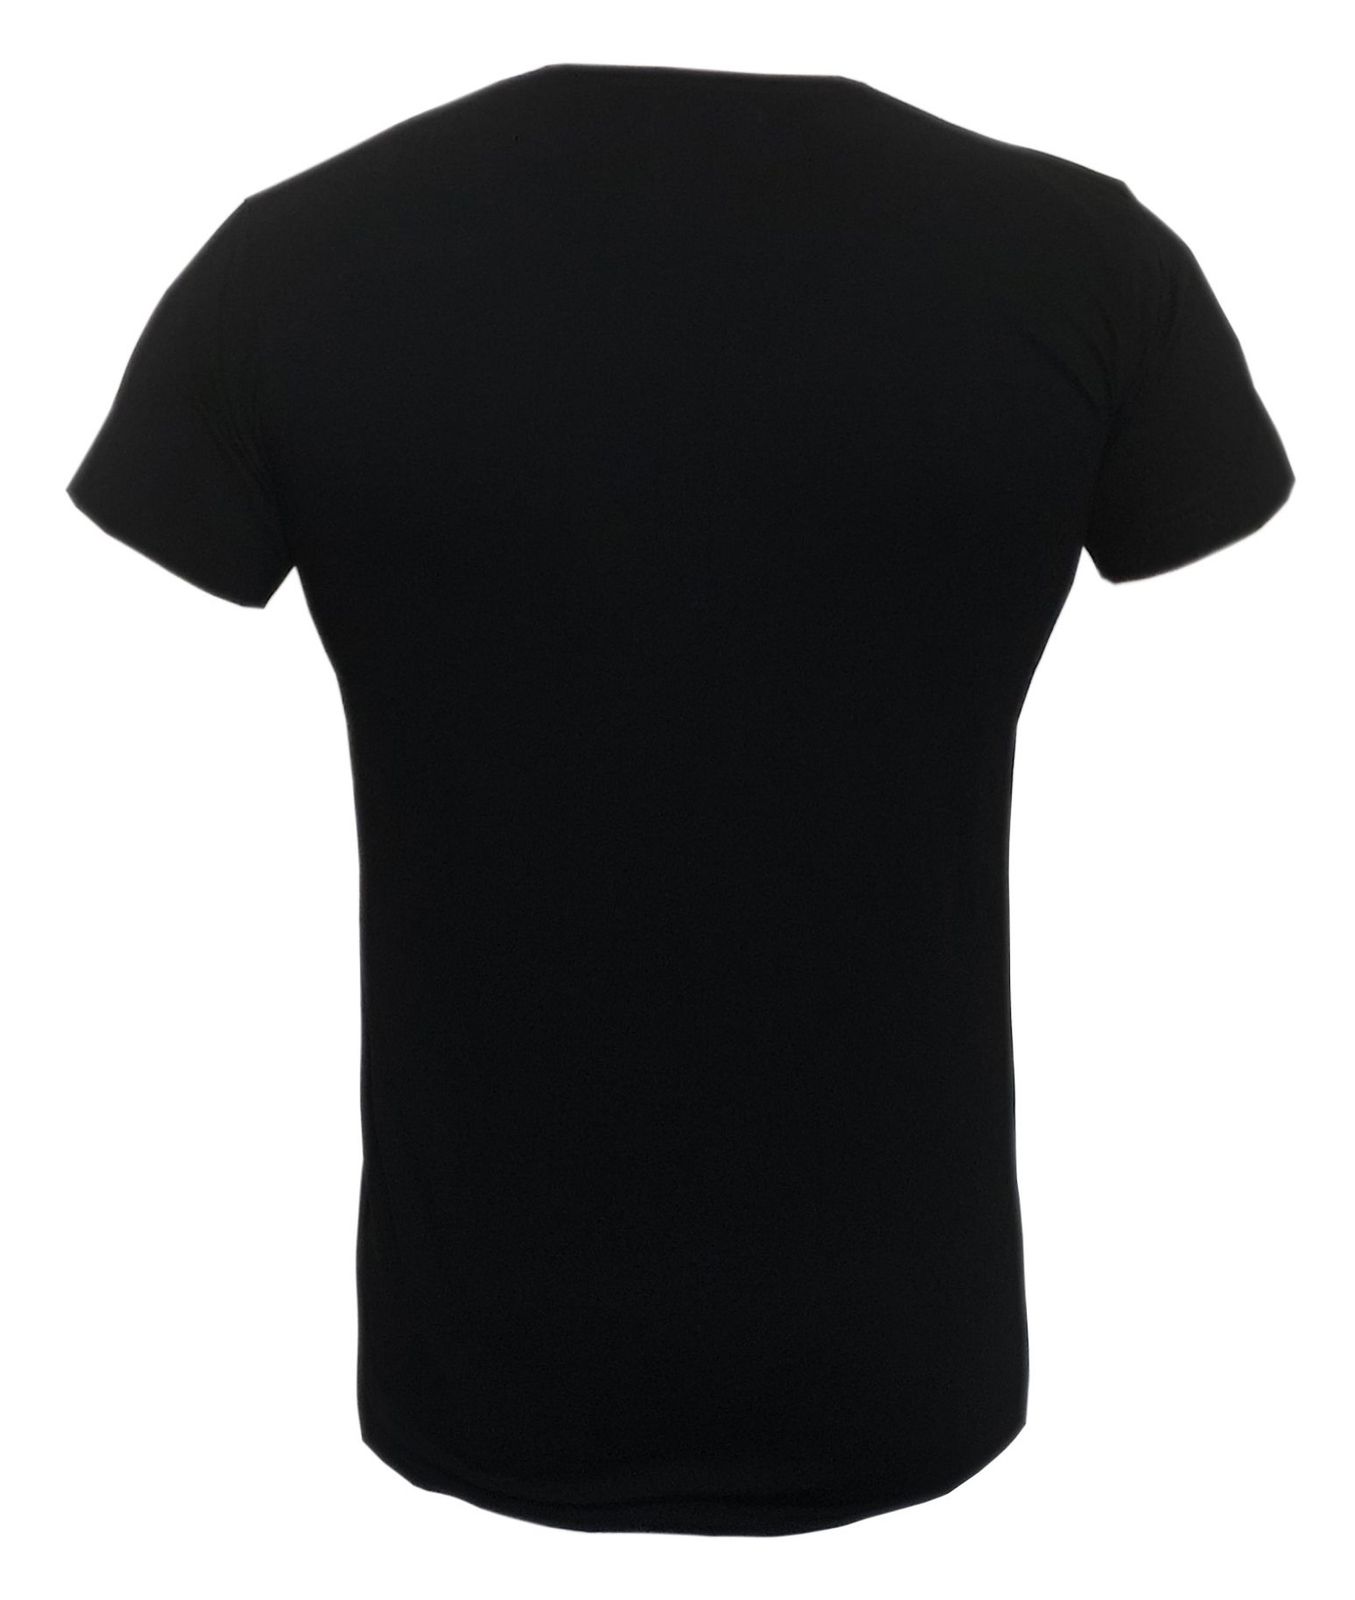 تی شرت مردانه نورث ریپابلیک کد A01 رنگ مشکی